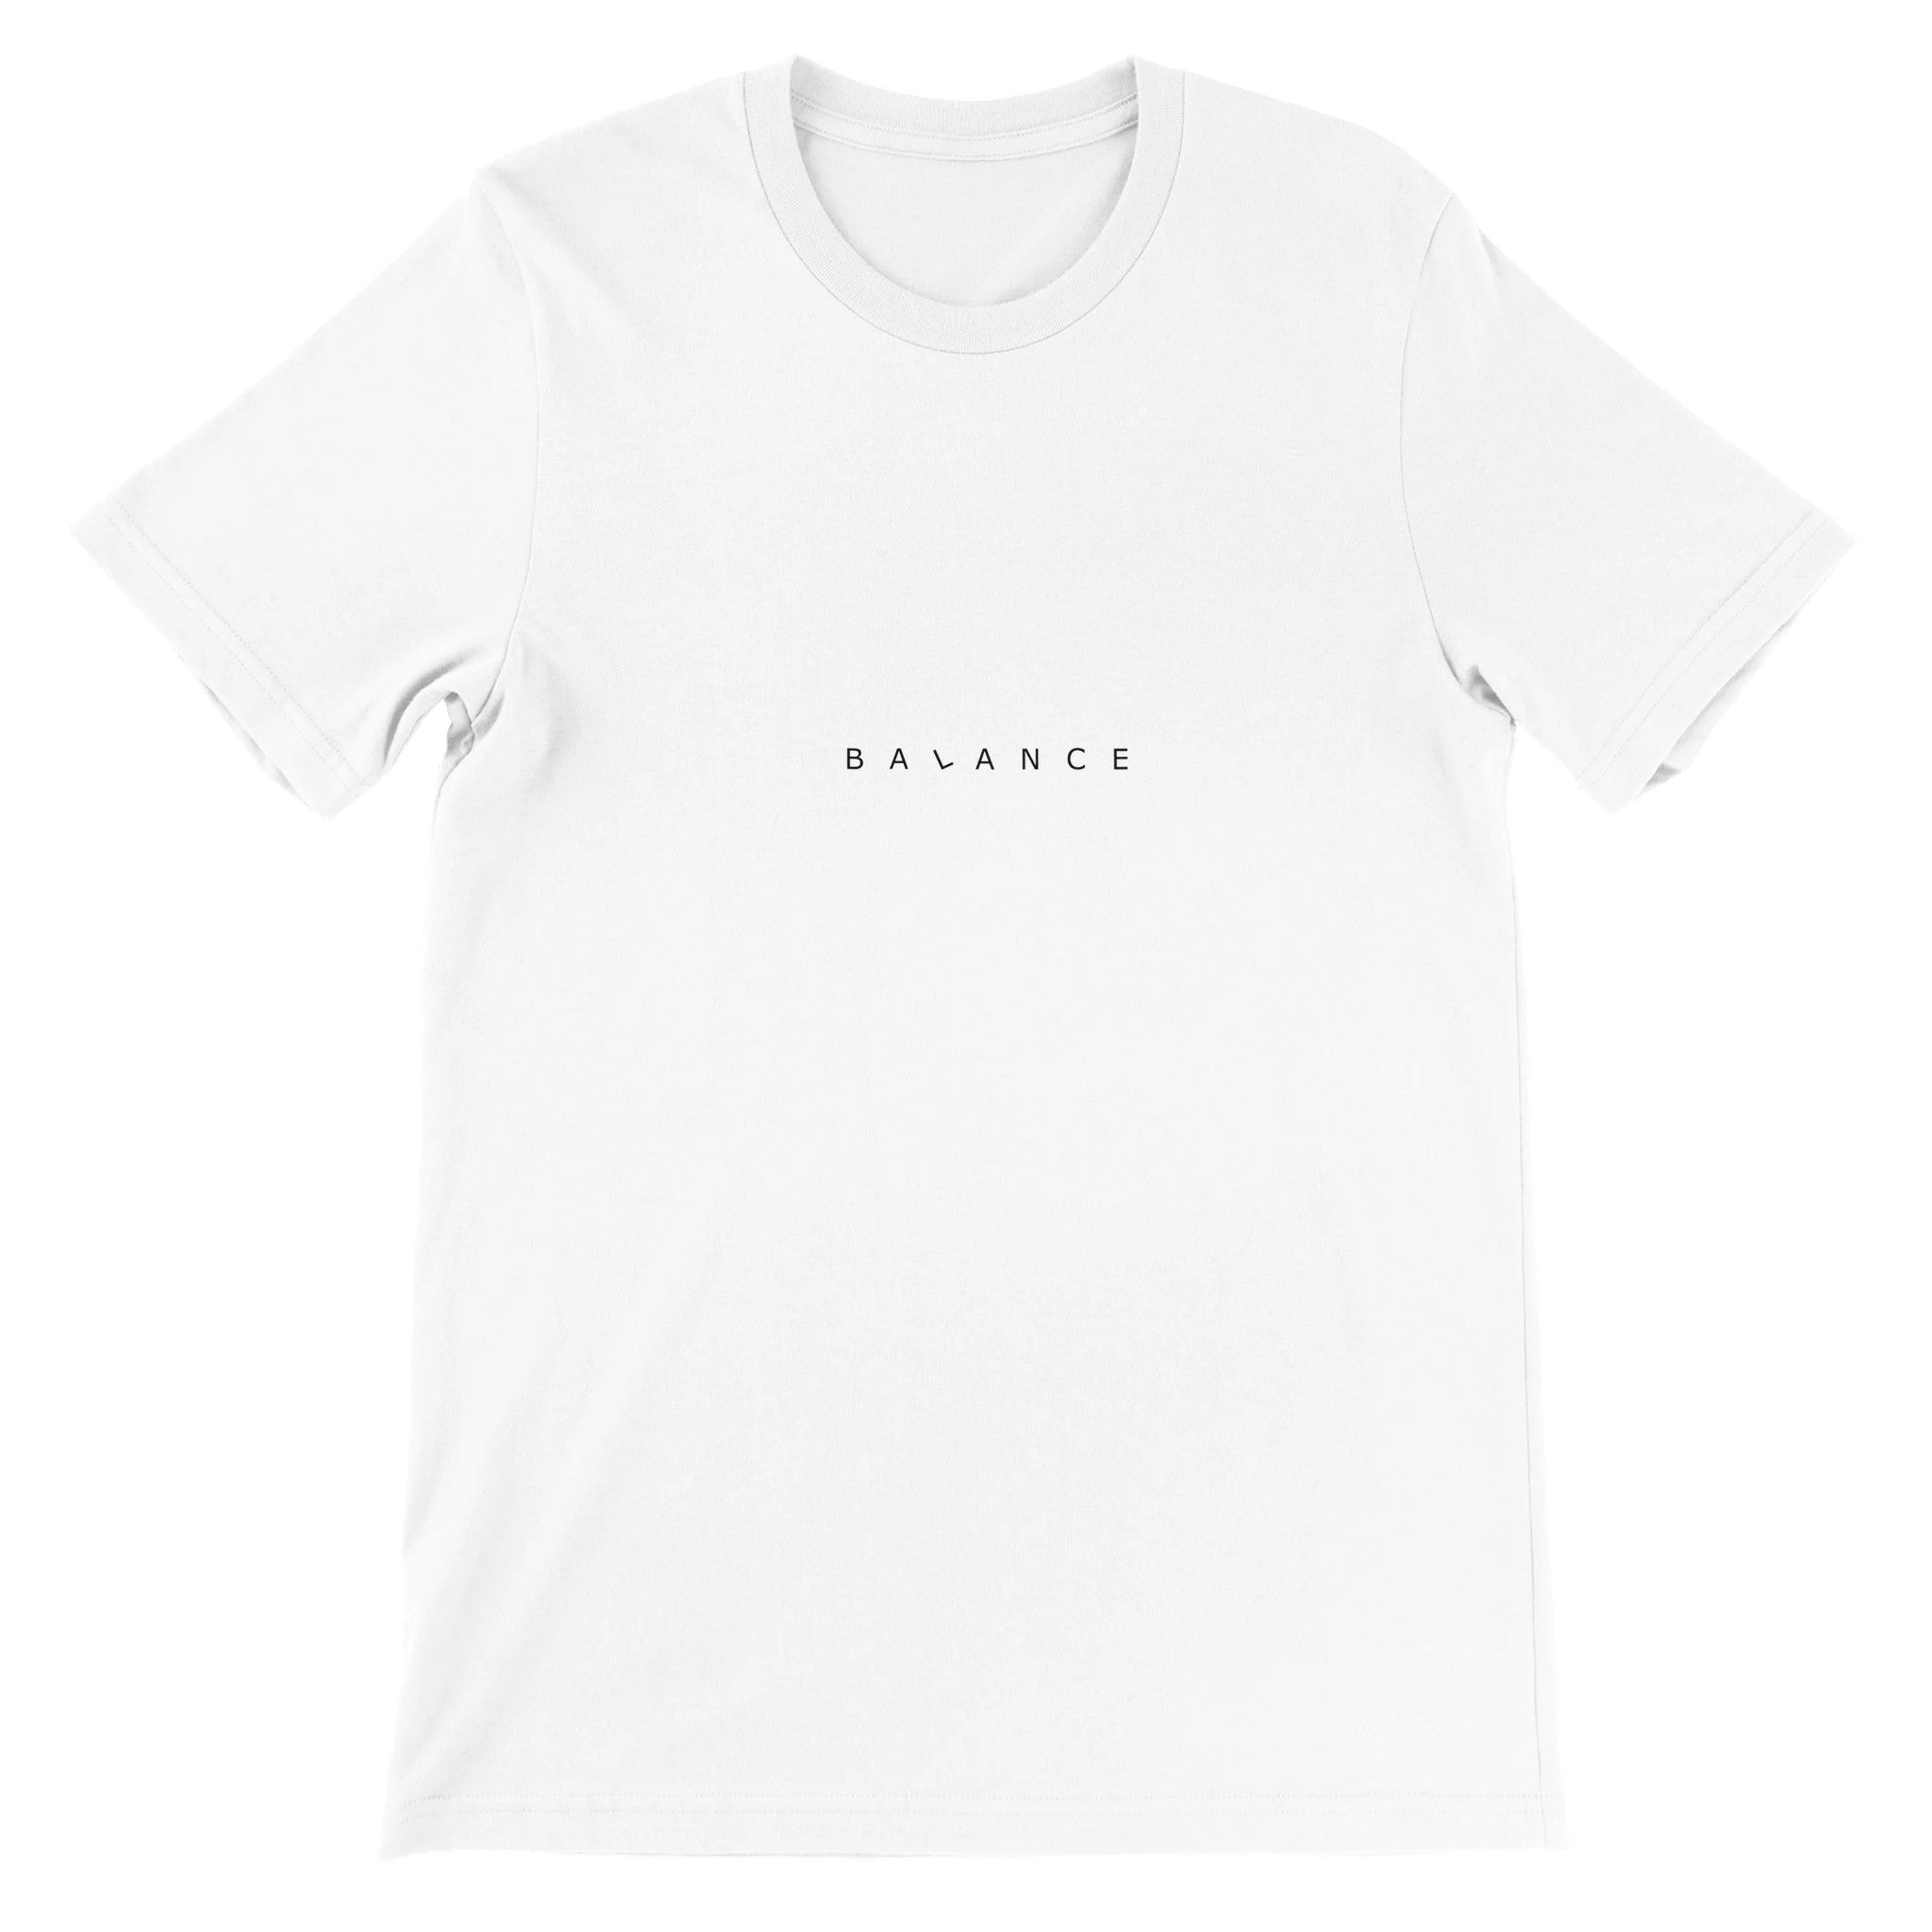 Balance Crewneck T-shirt - Optimalprint